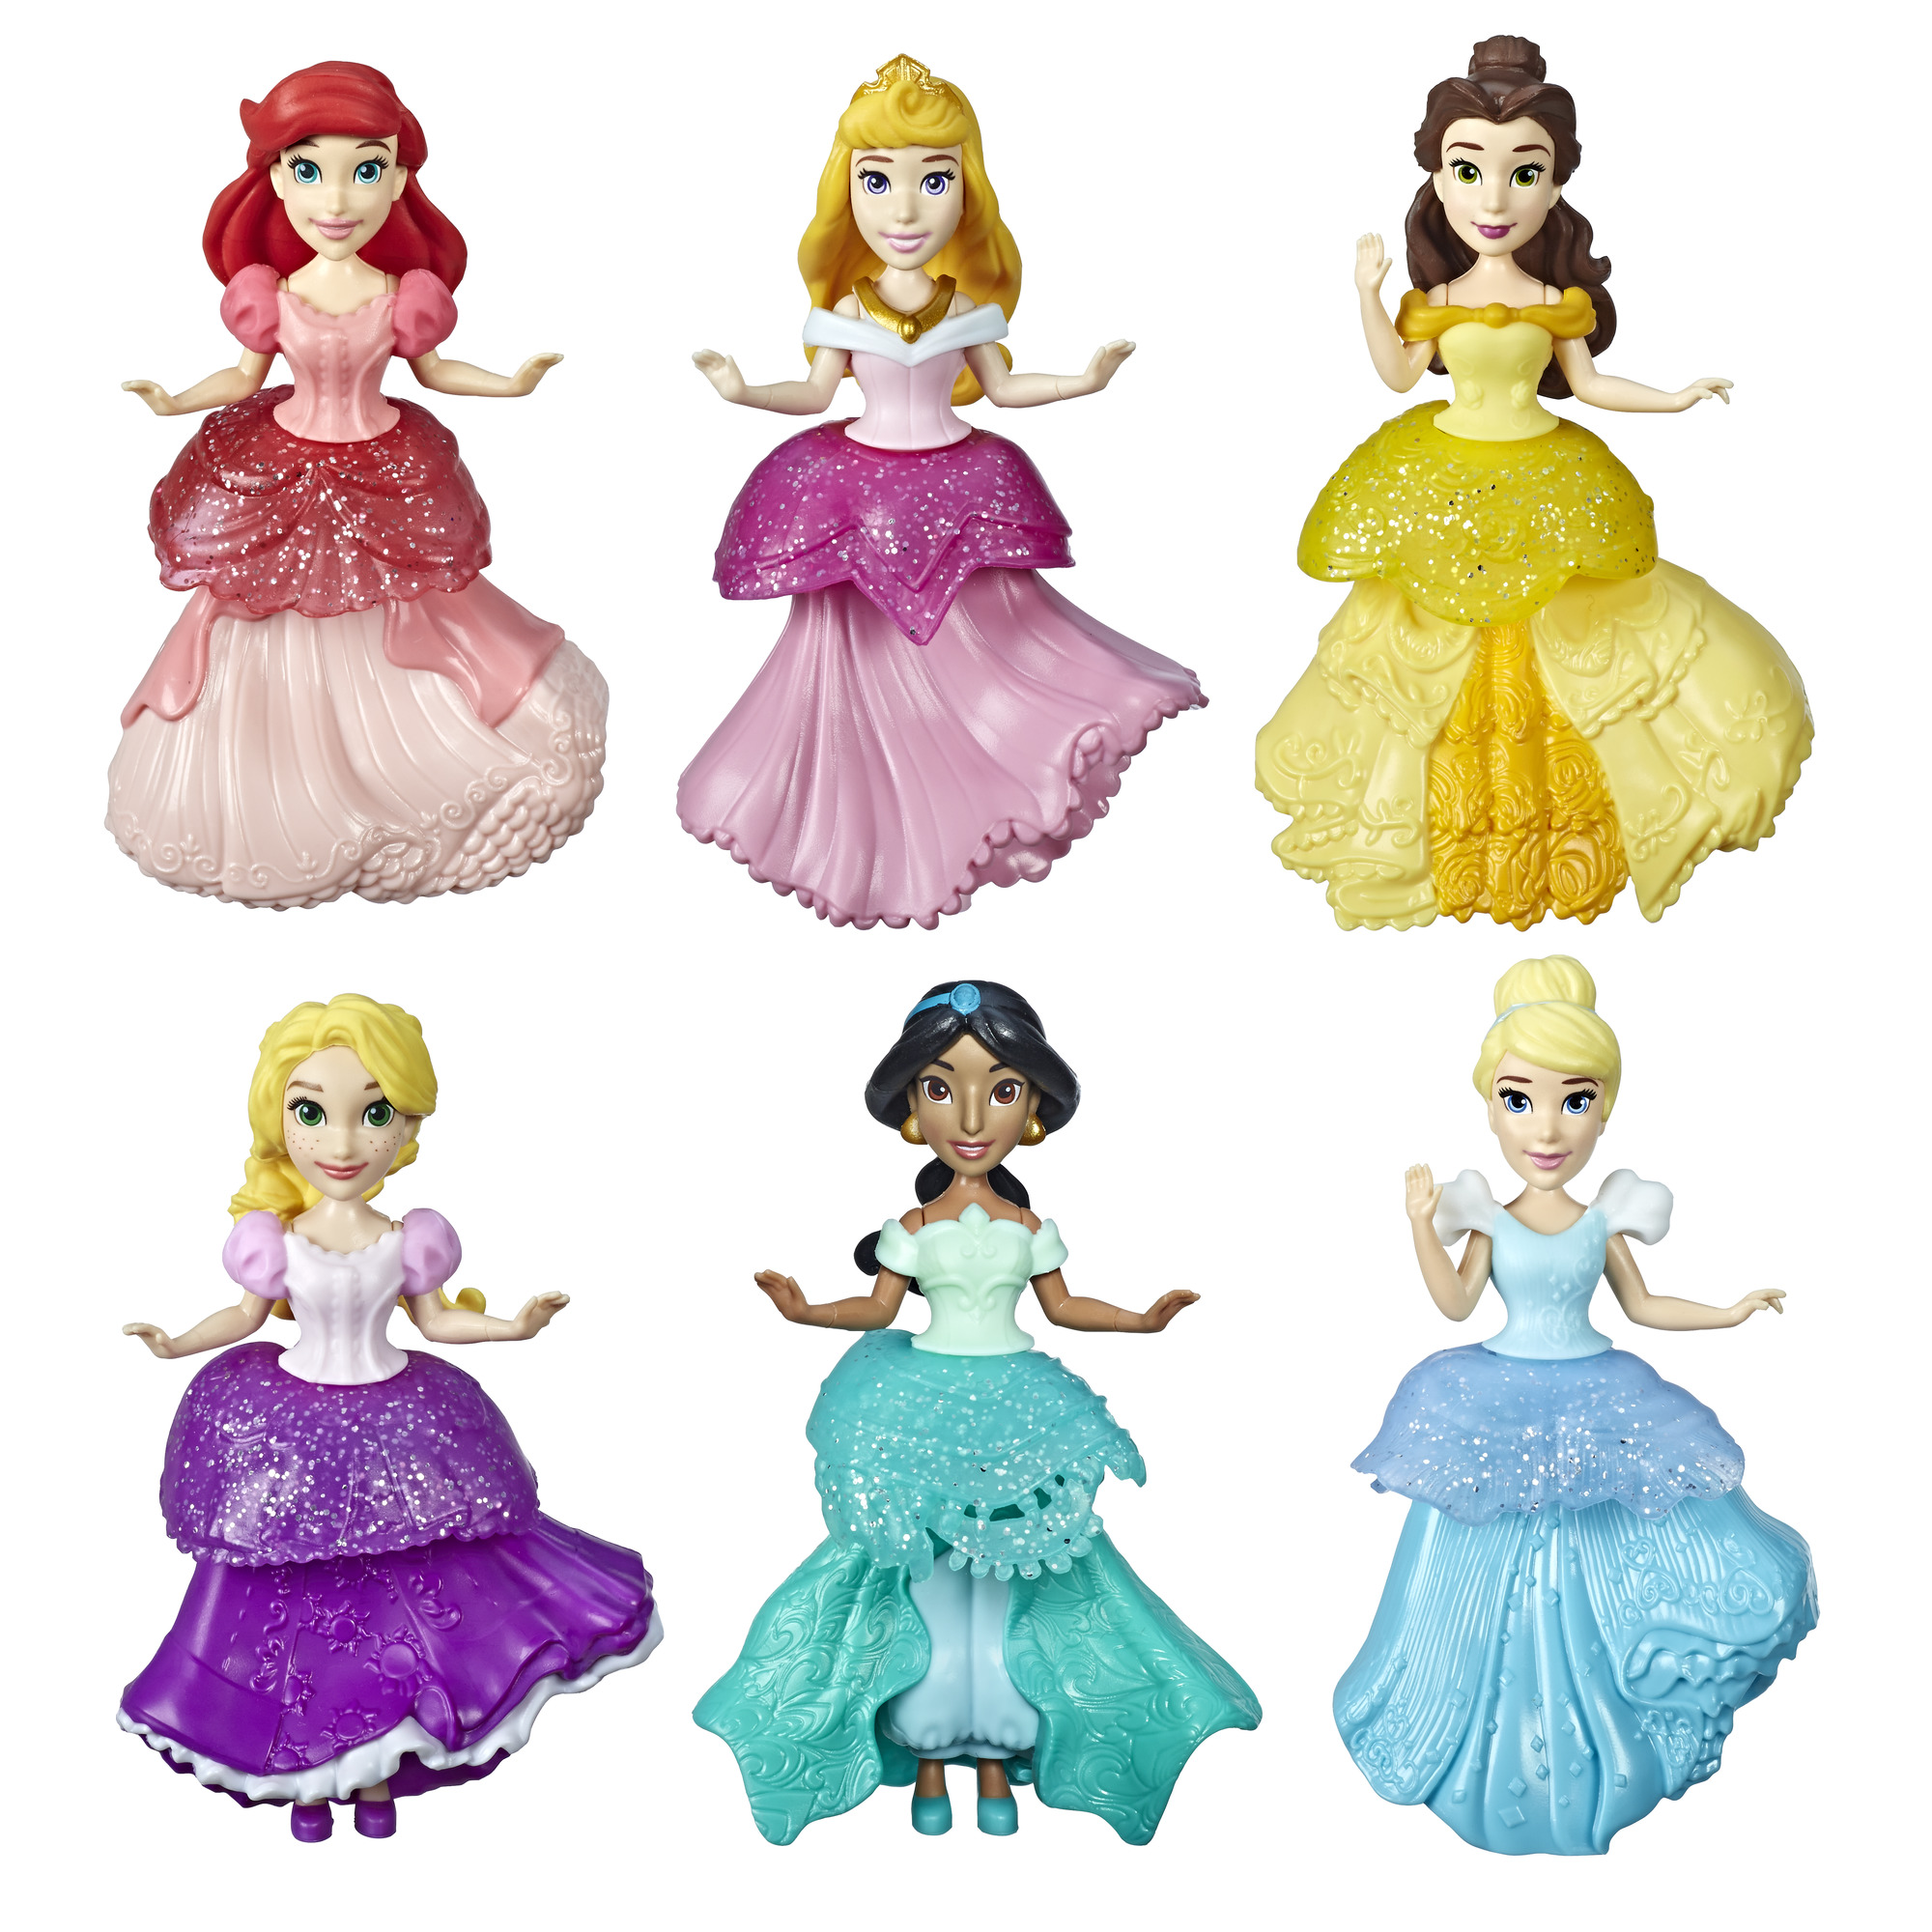 Купить принцесс дисней. Куклы Хасбро принцессы Дисней. Кукла Hasbro Disney Princess Royal clips, 9 см, e3049. Принцесс мини-кукла 6pak Disney Hasbro. Disney куклы "принцессы - модницы".